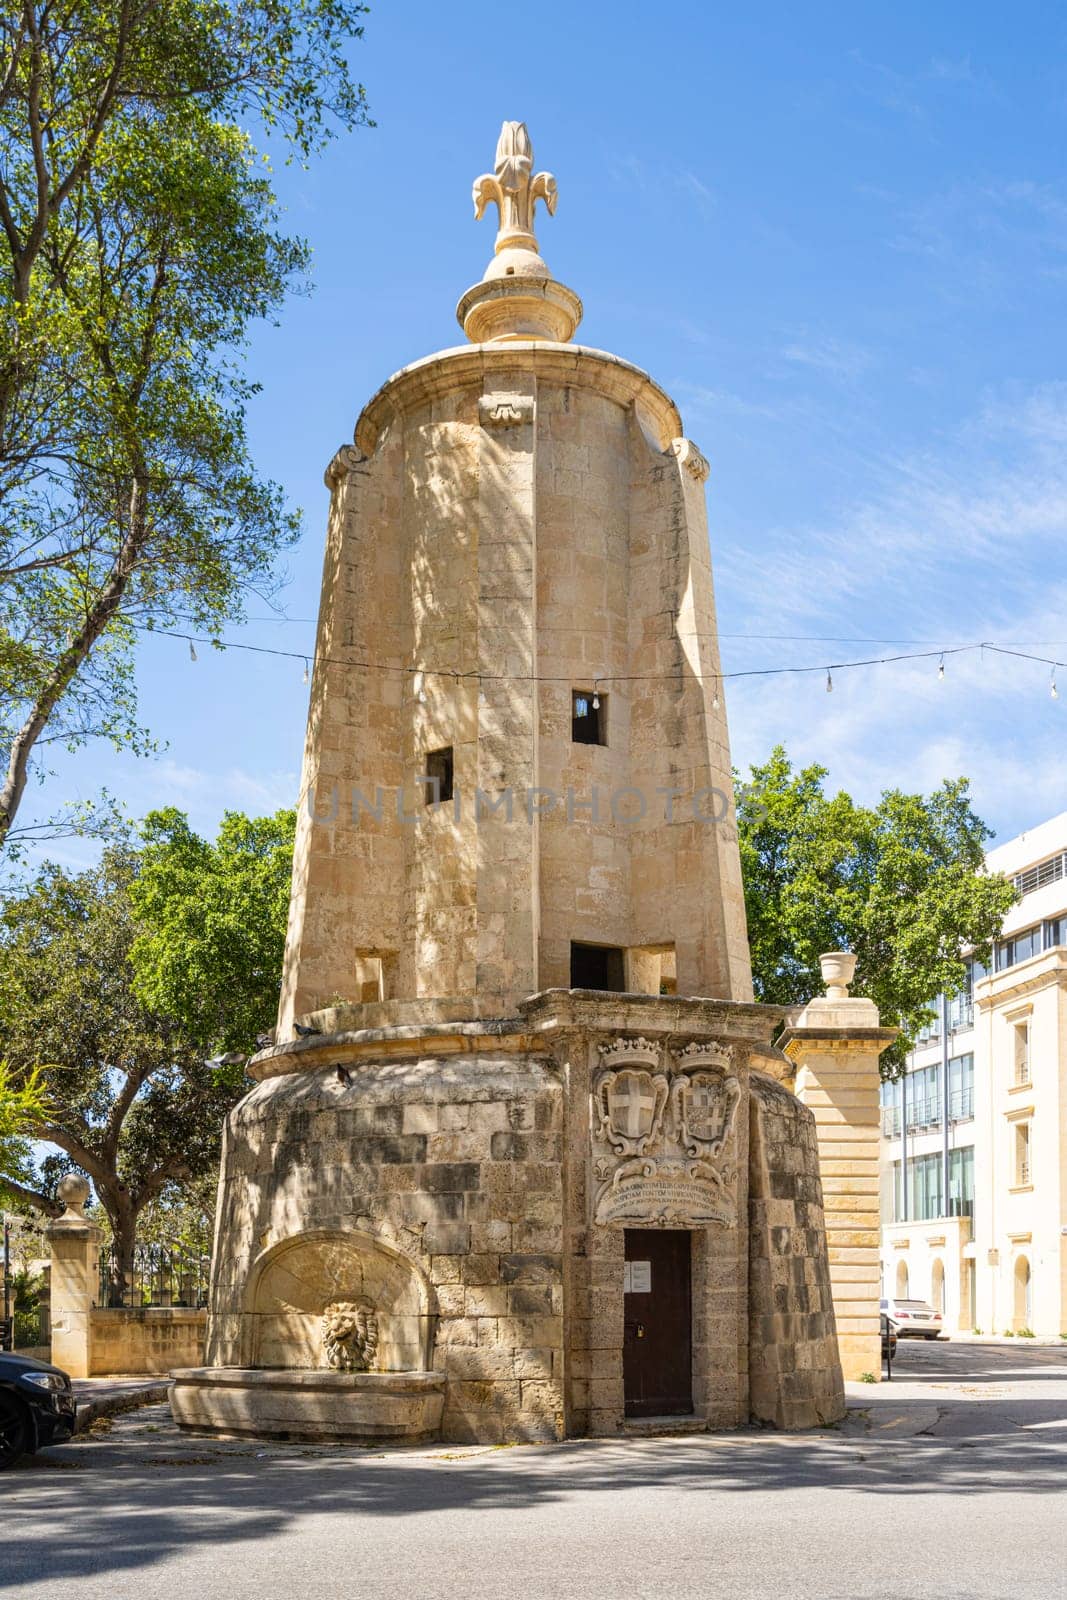 Wignacourt Water Tower in Valletta, Malta
 by sergiodv